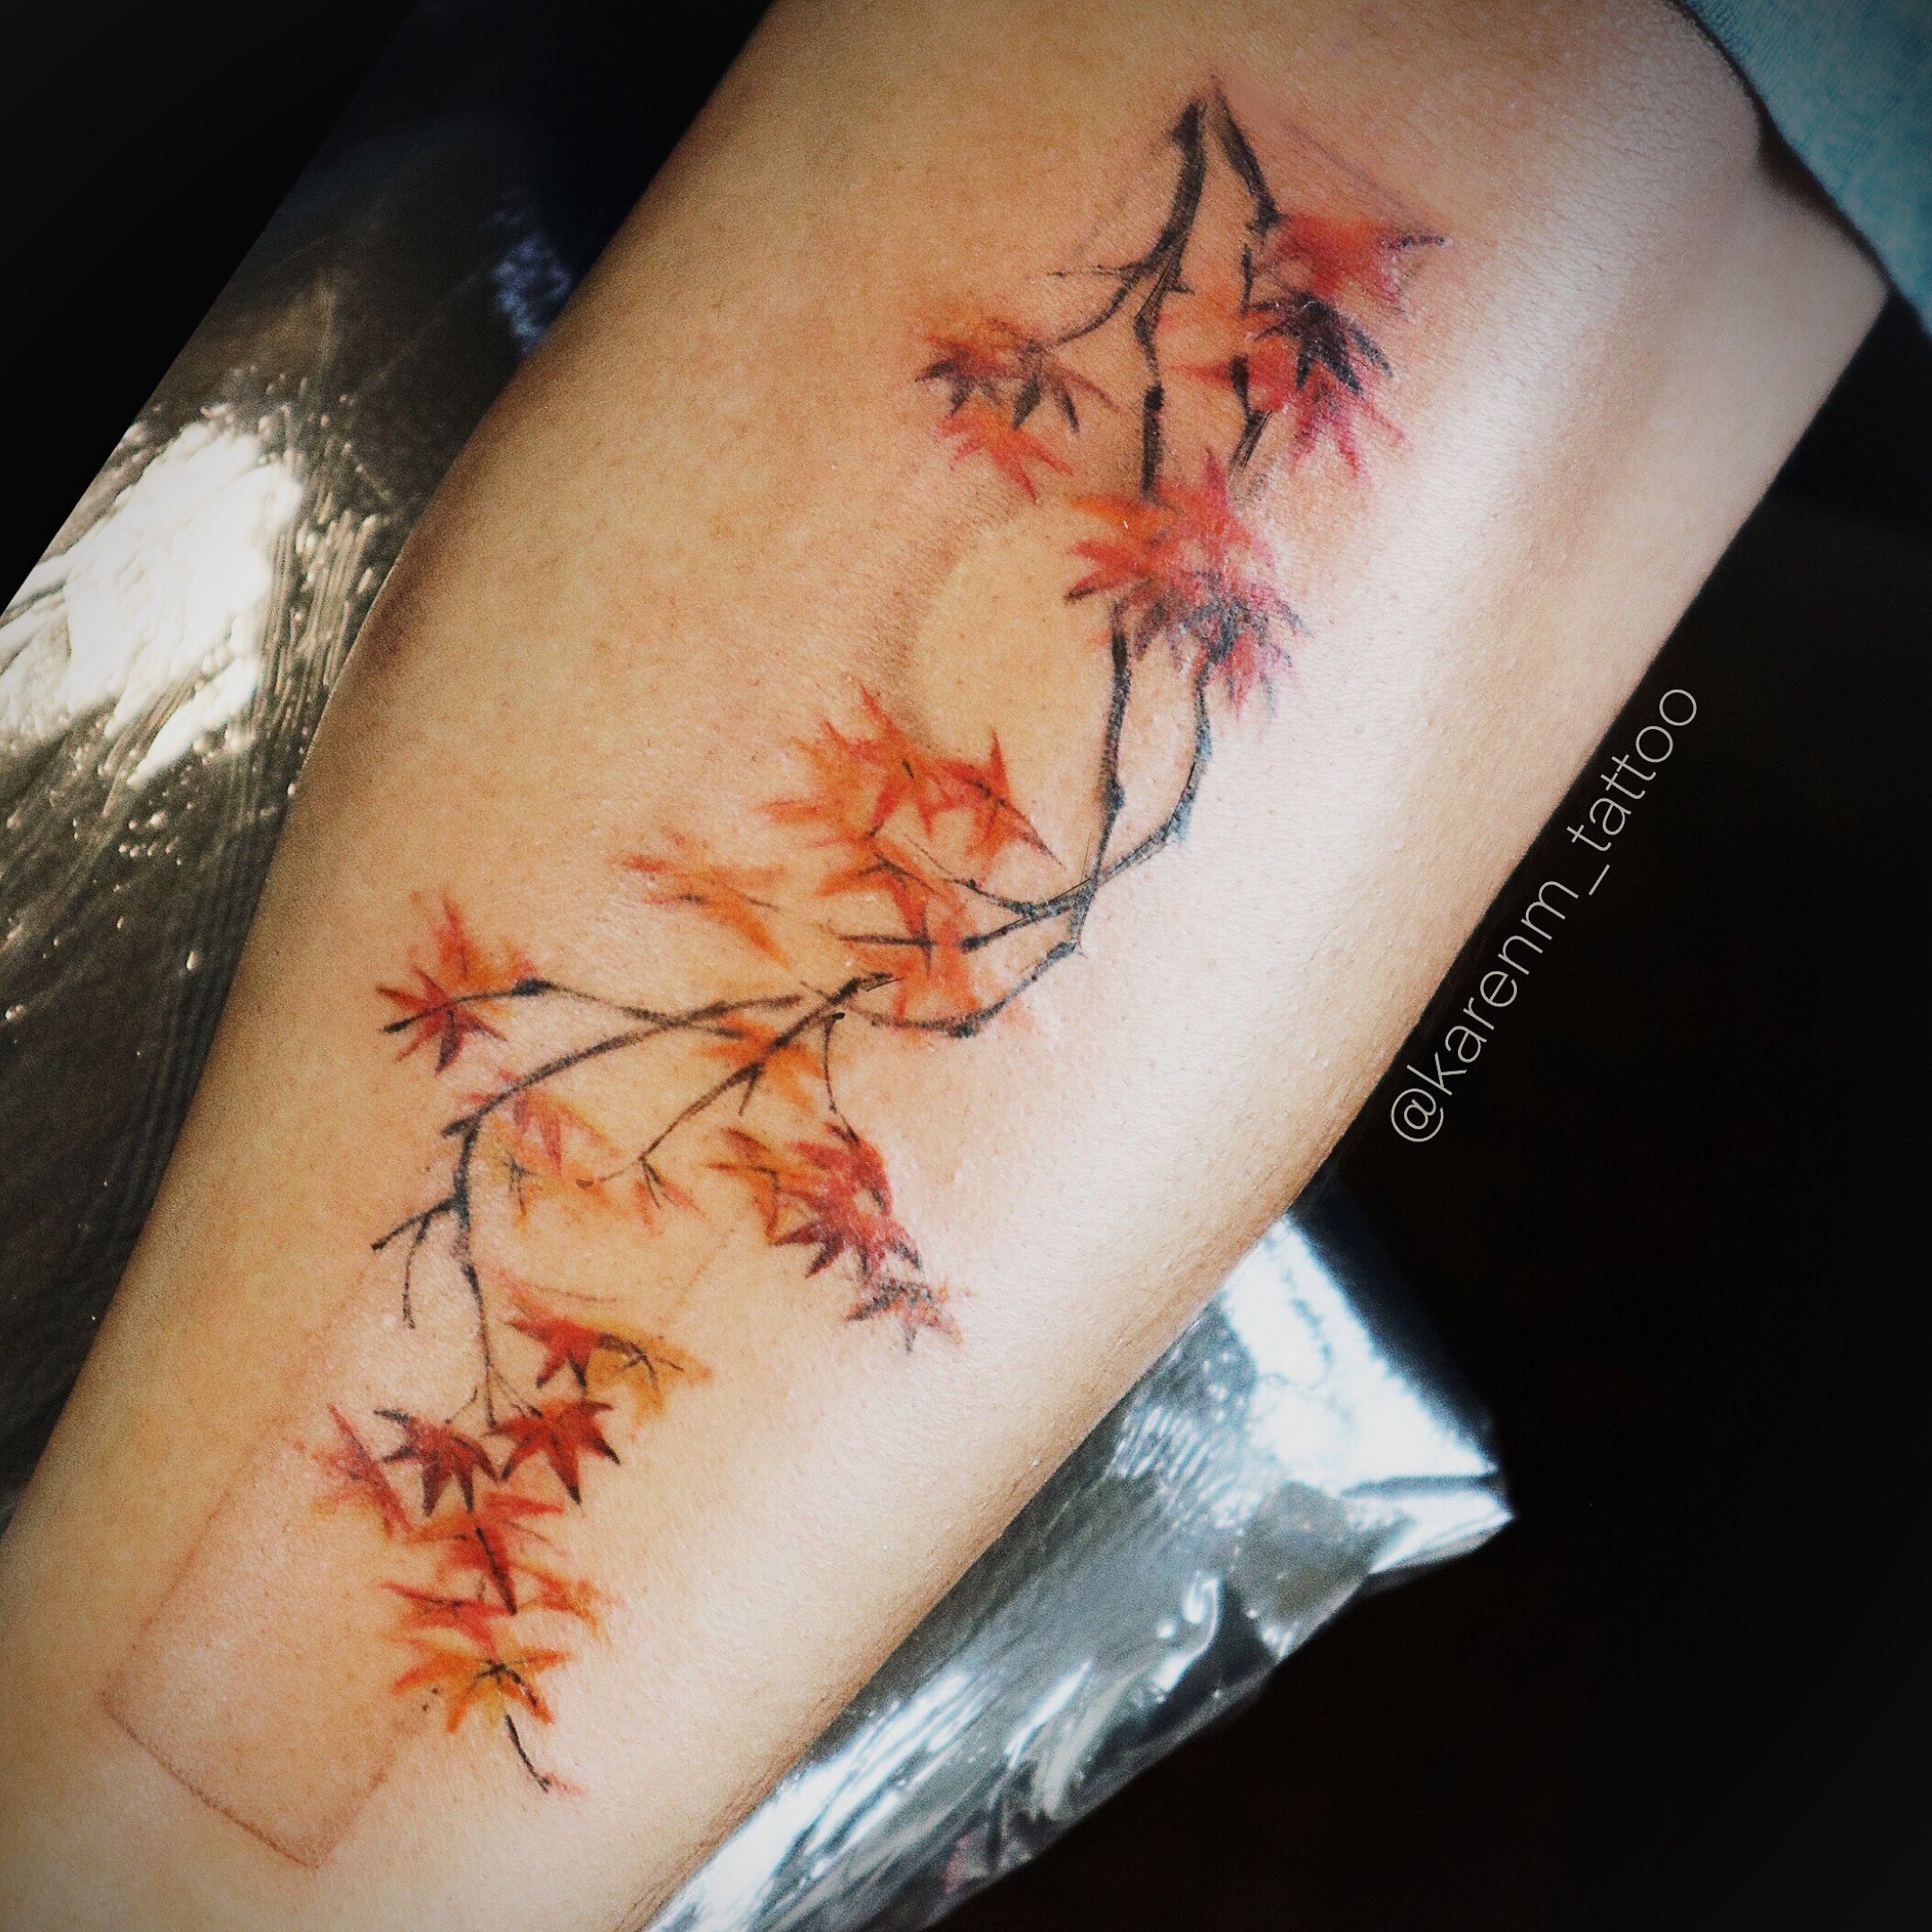 tree branch tattoo